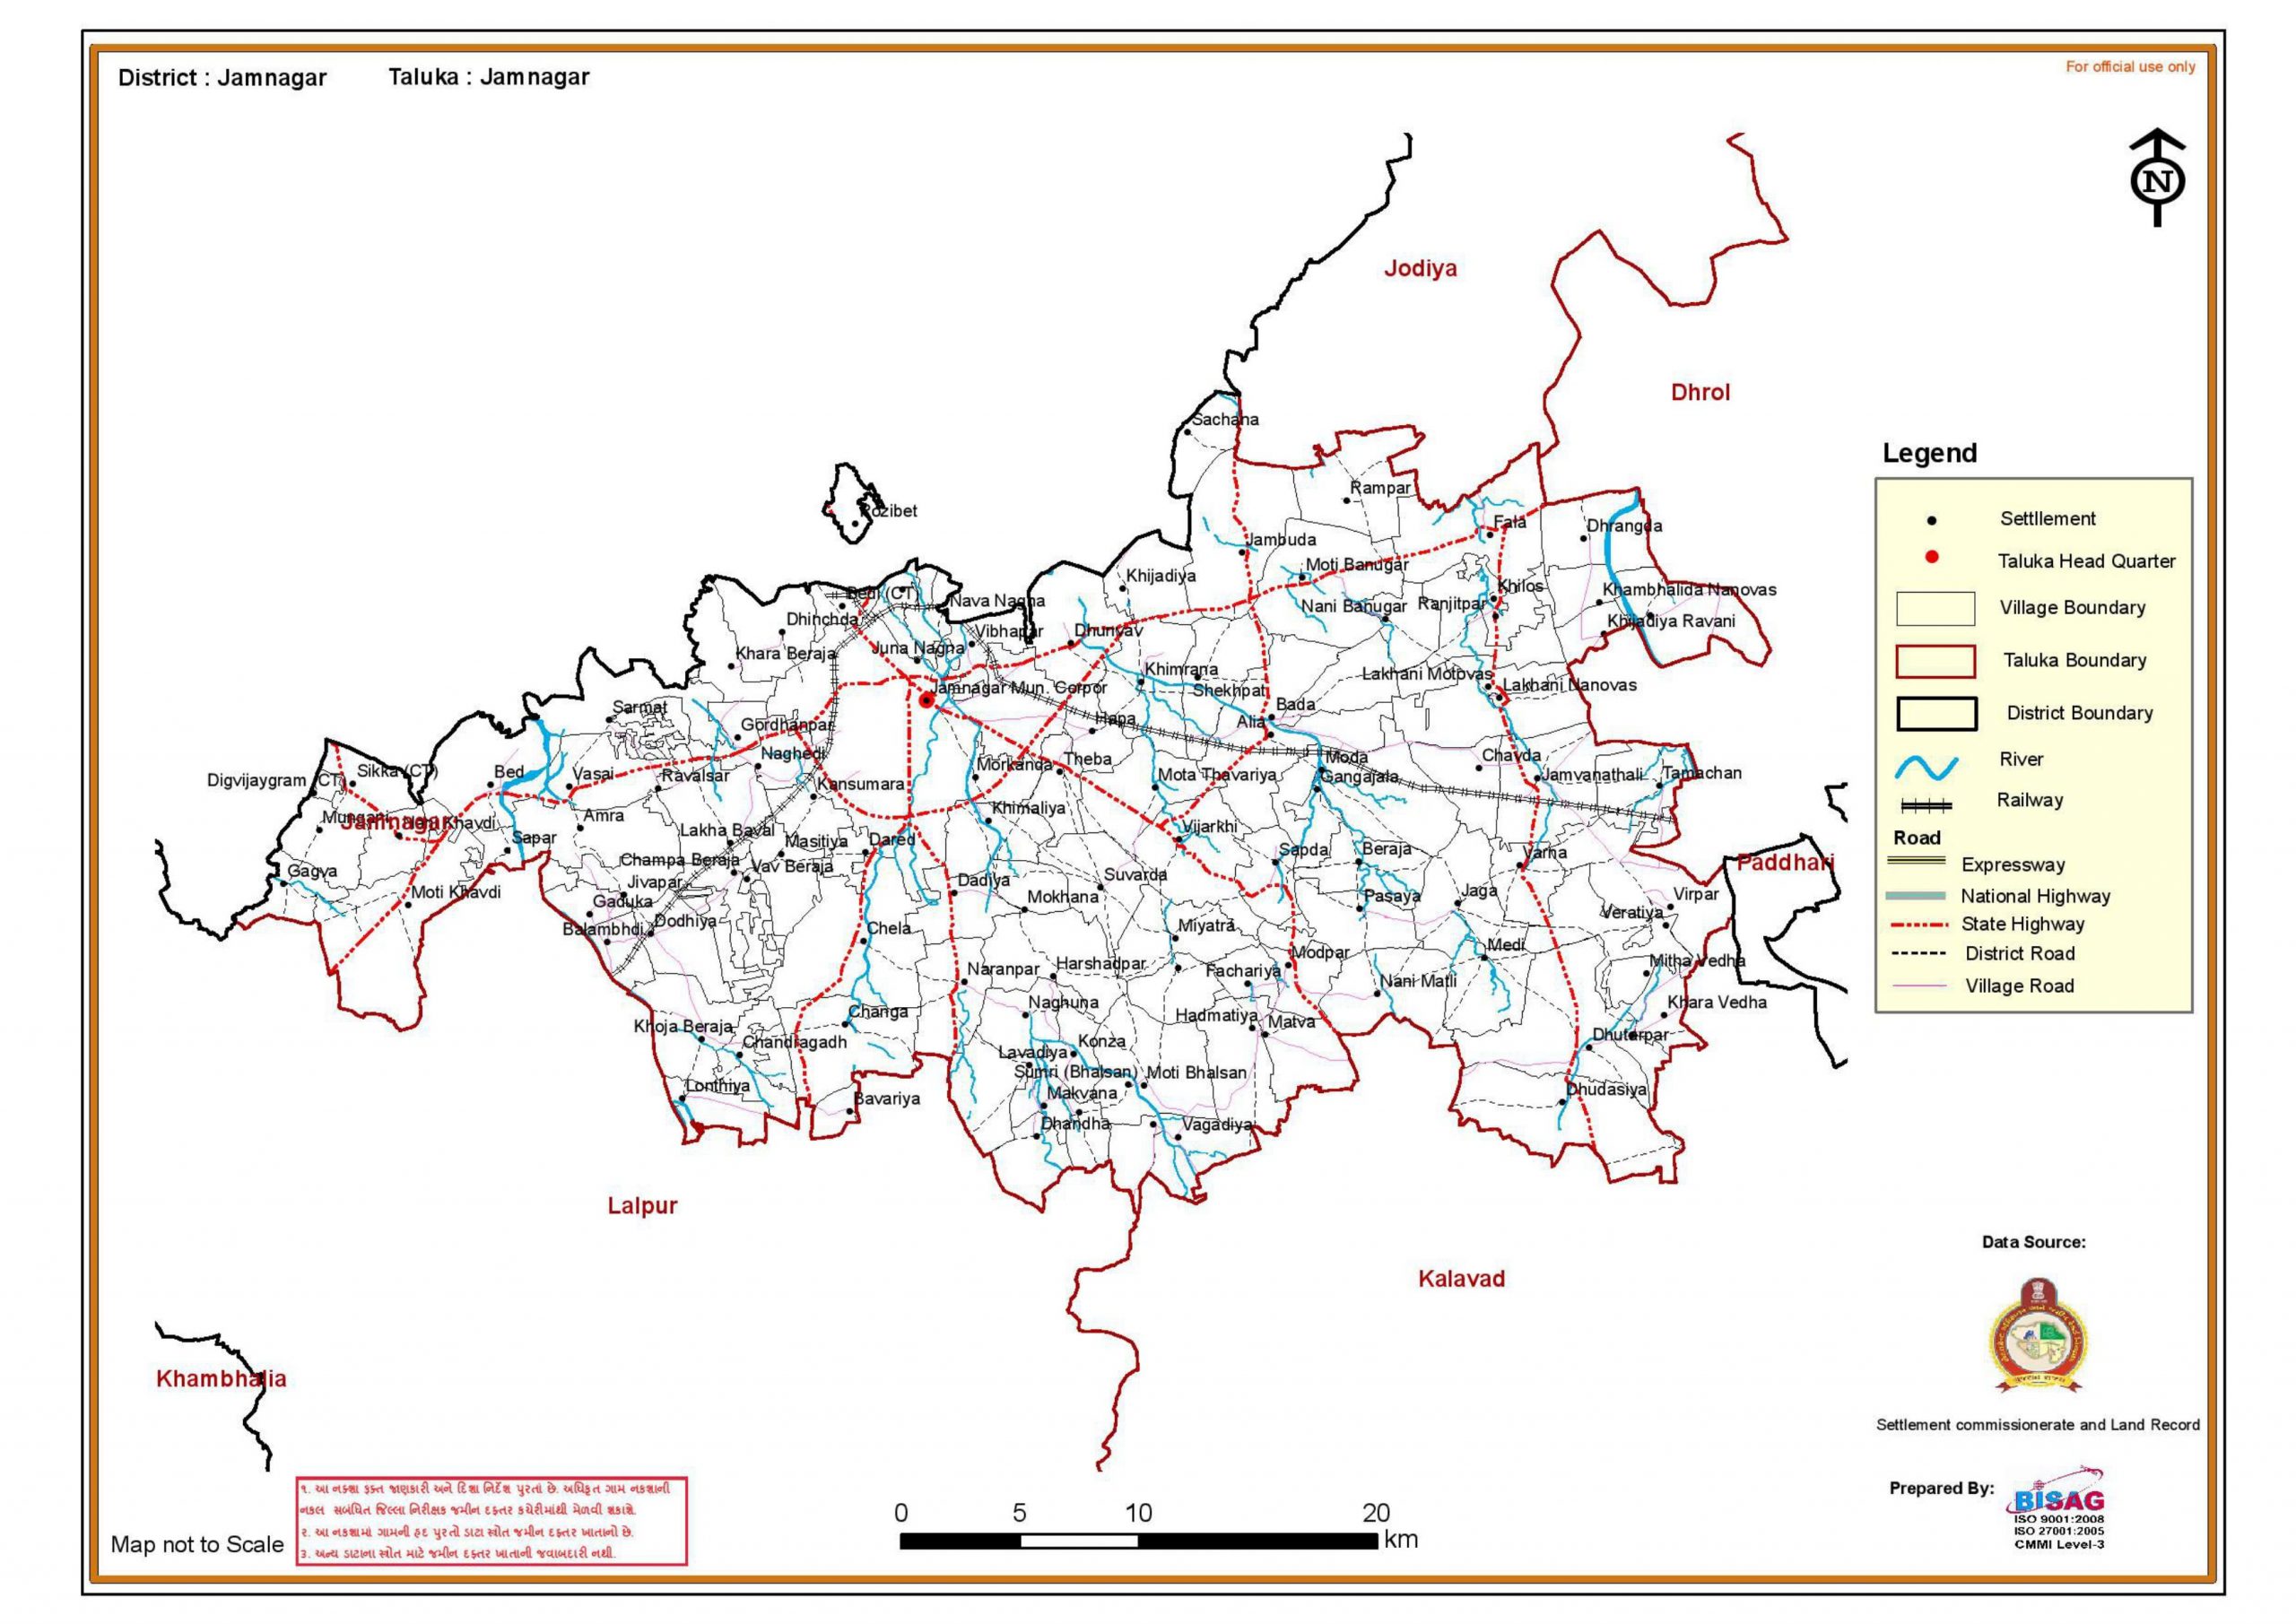 jamnagar district map